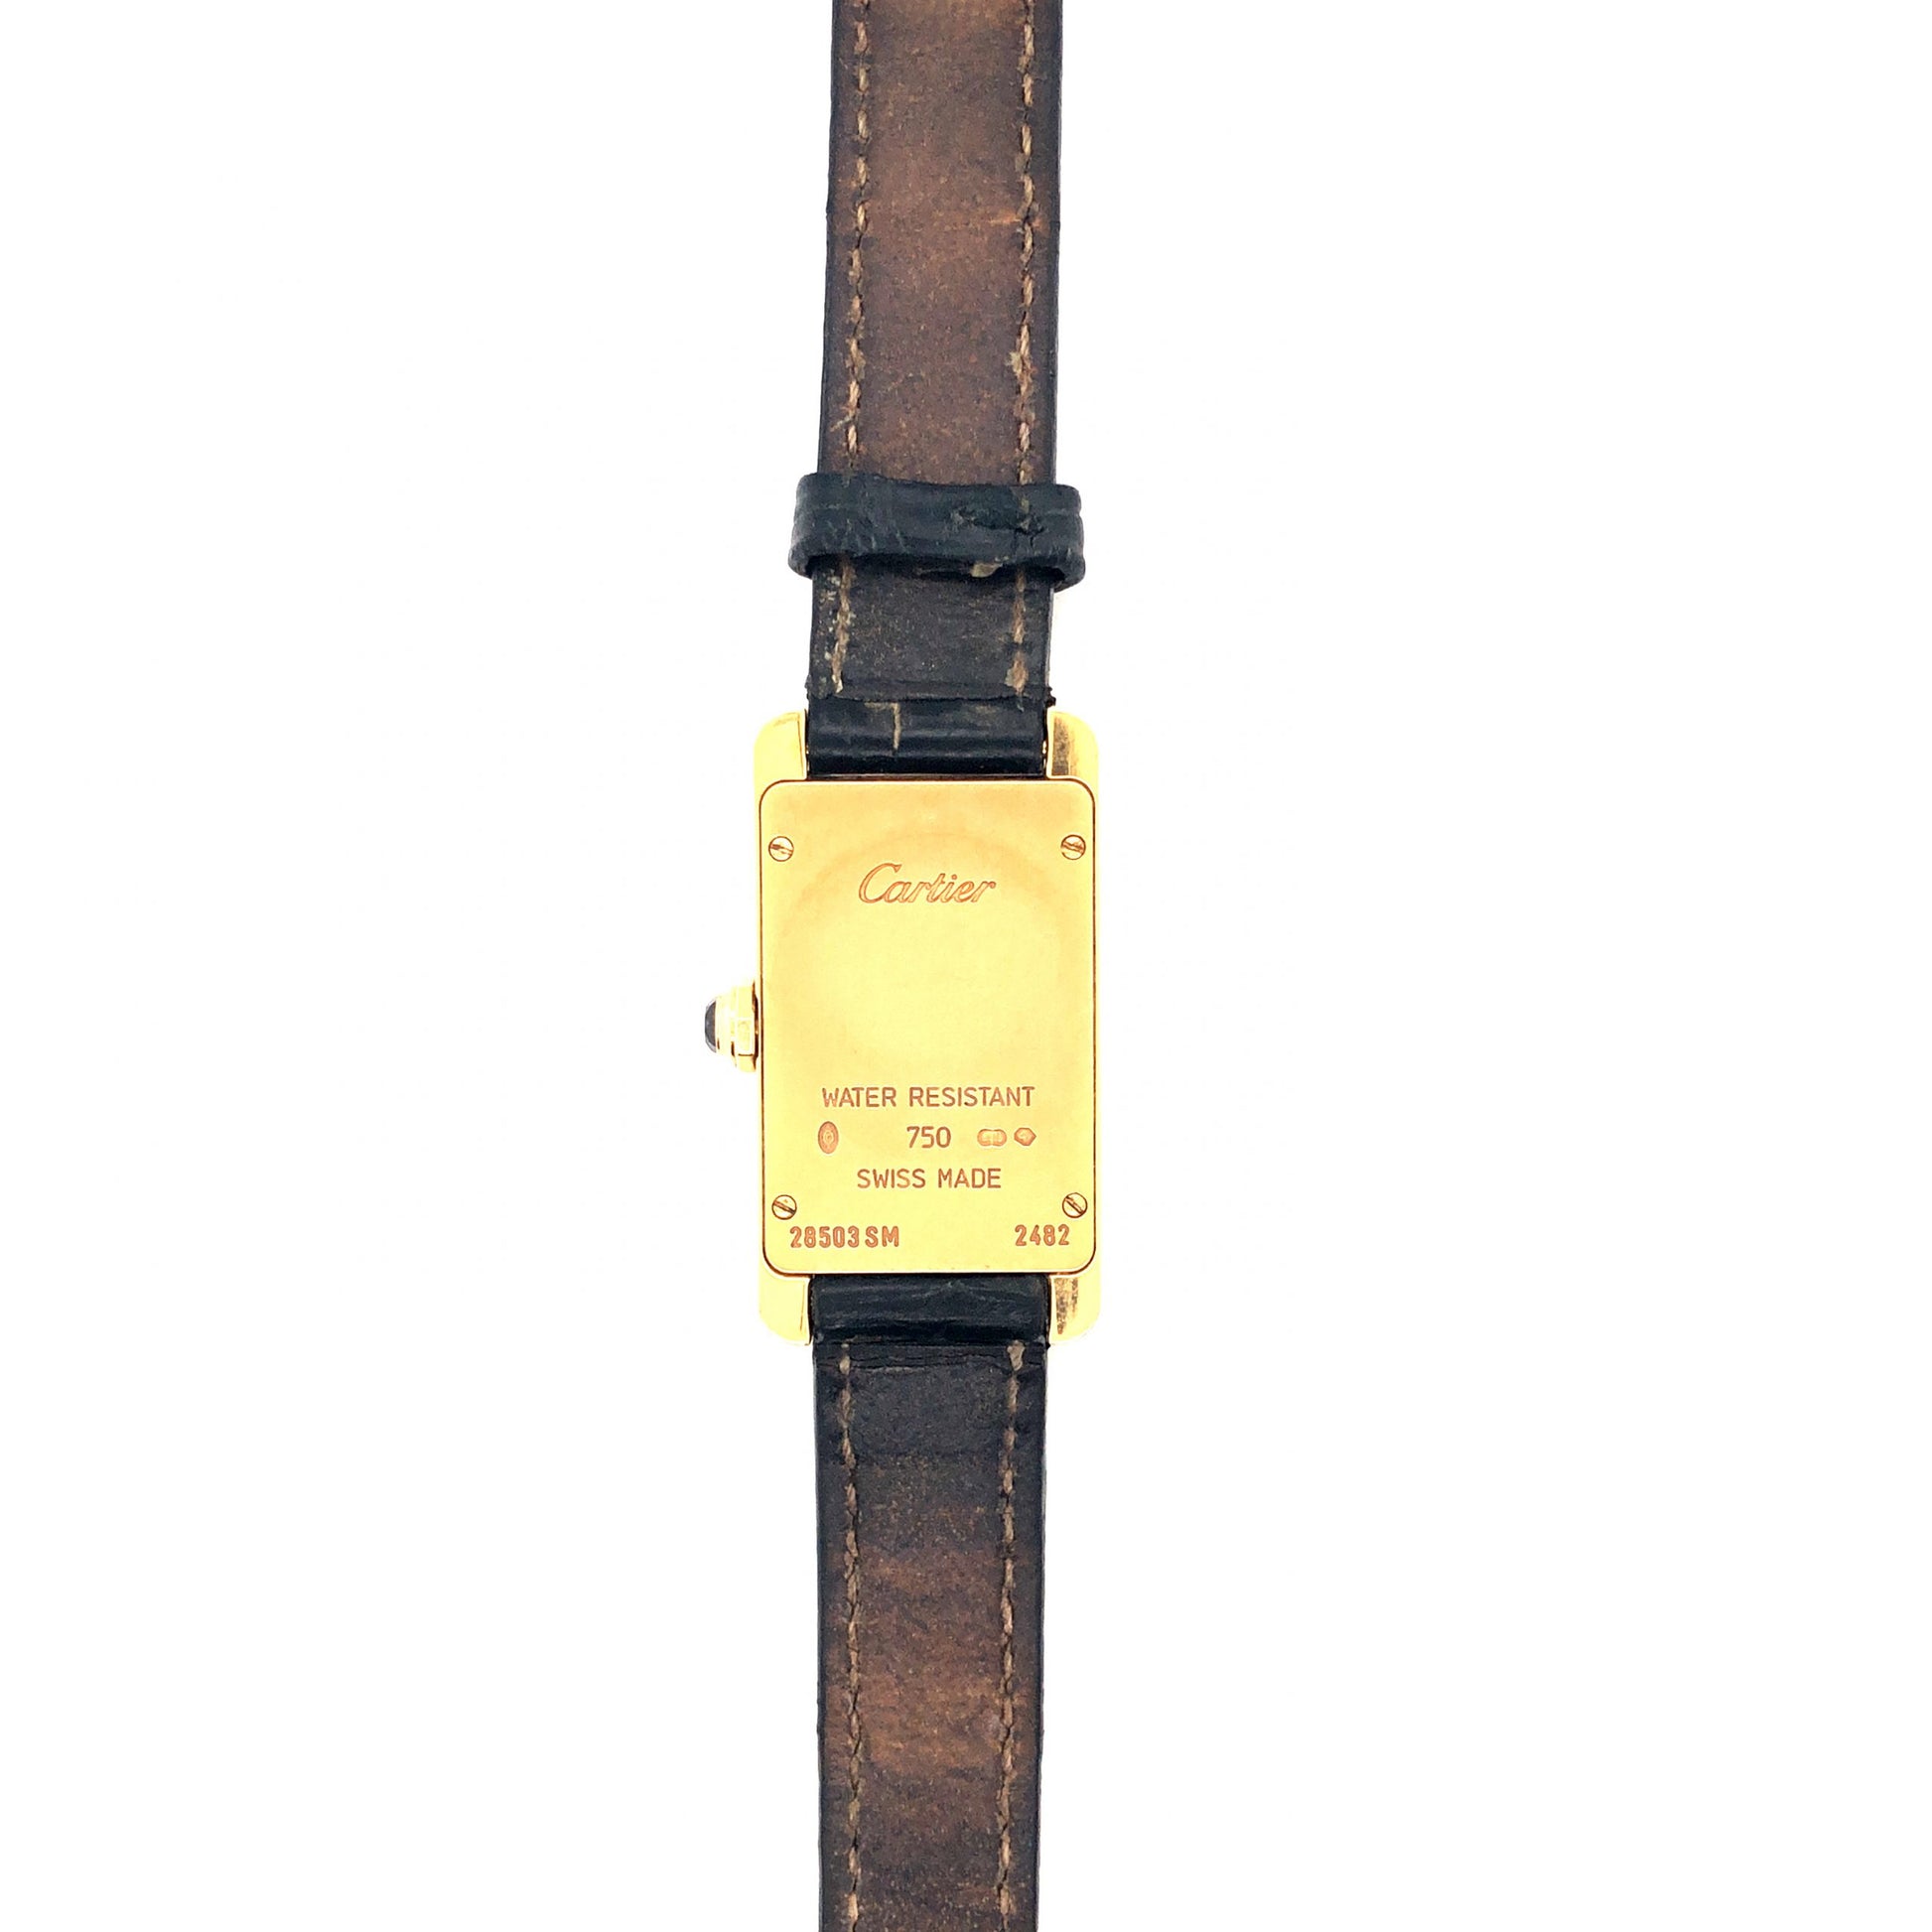 Cartier Tank Américaine Watch in 18k Yellow GoldComposition: 18 Karat Yellow GoldTotal Gram Weight: 33.4 gInscription: Cartier 